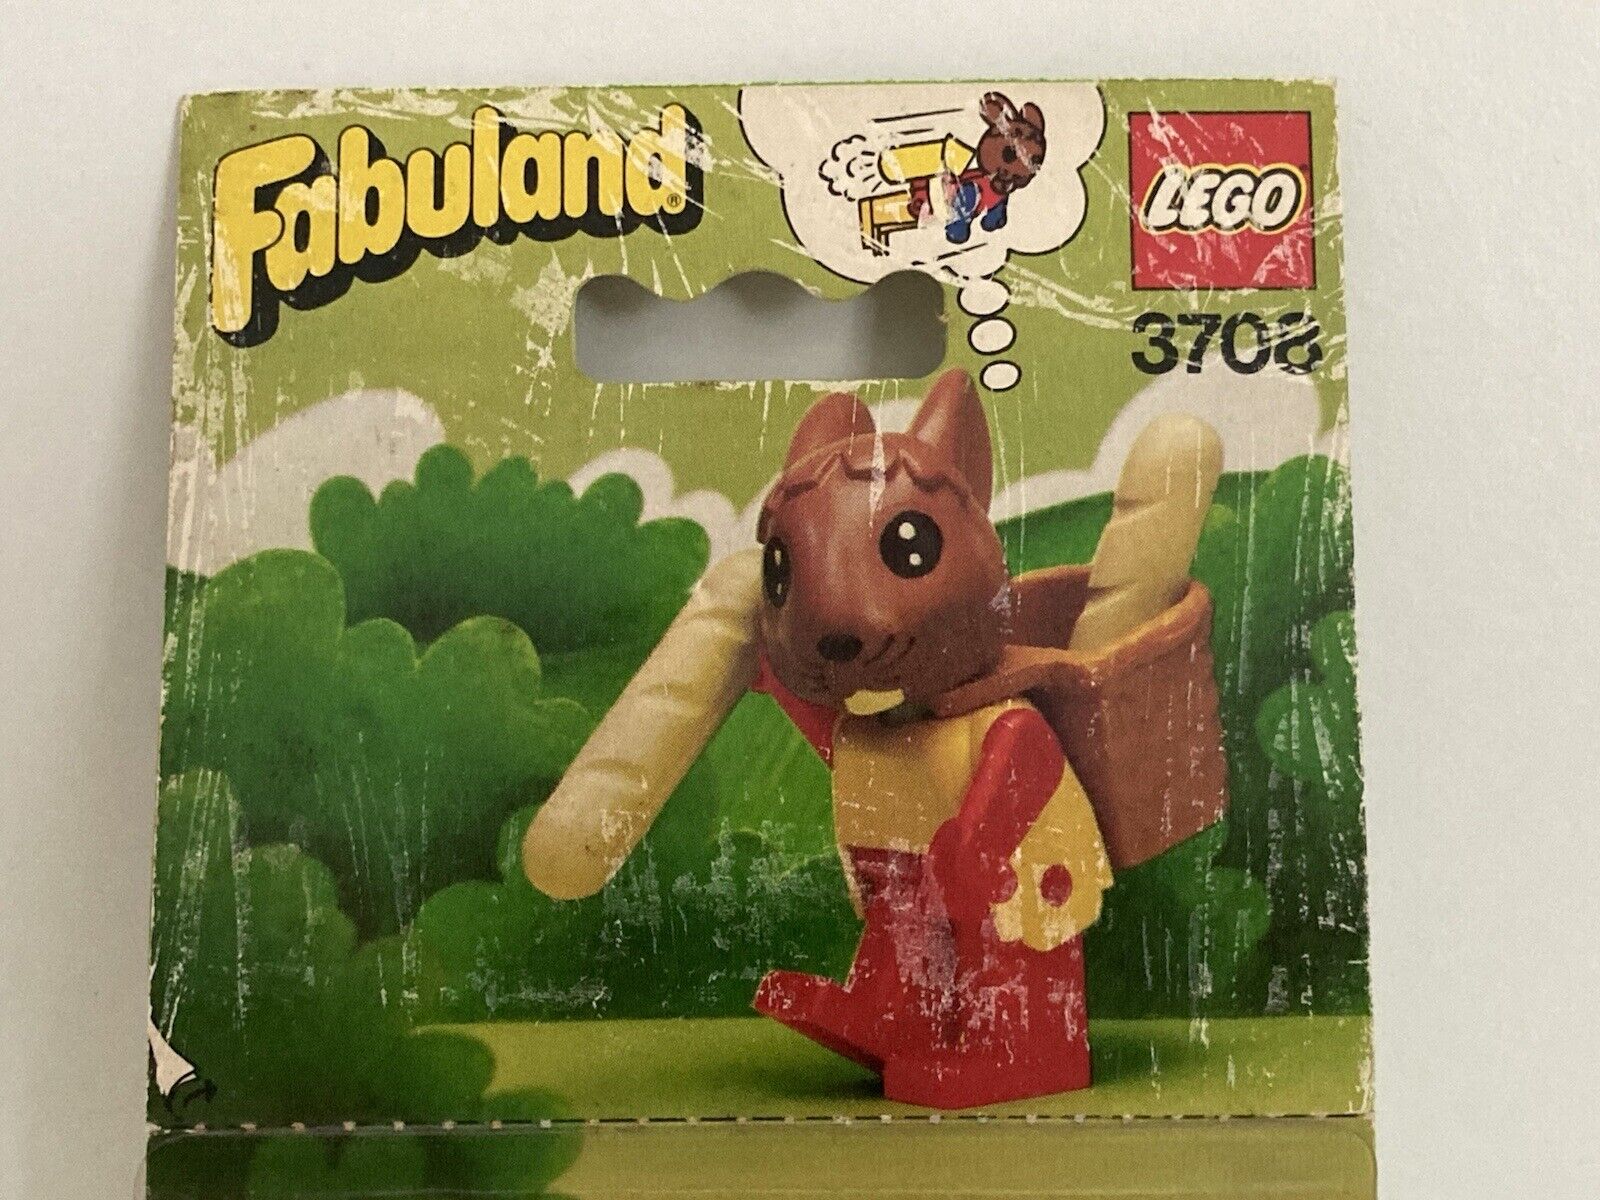 New 1982 Lego Fabuland 3708 Rufus Rabbit Bakers Boy Sealed Box MISB